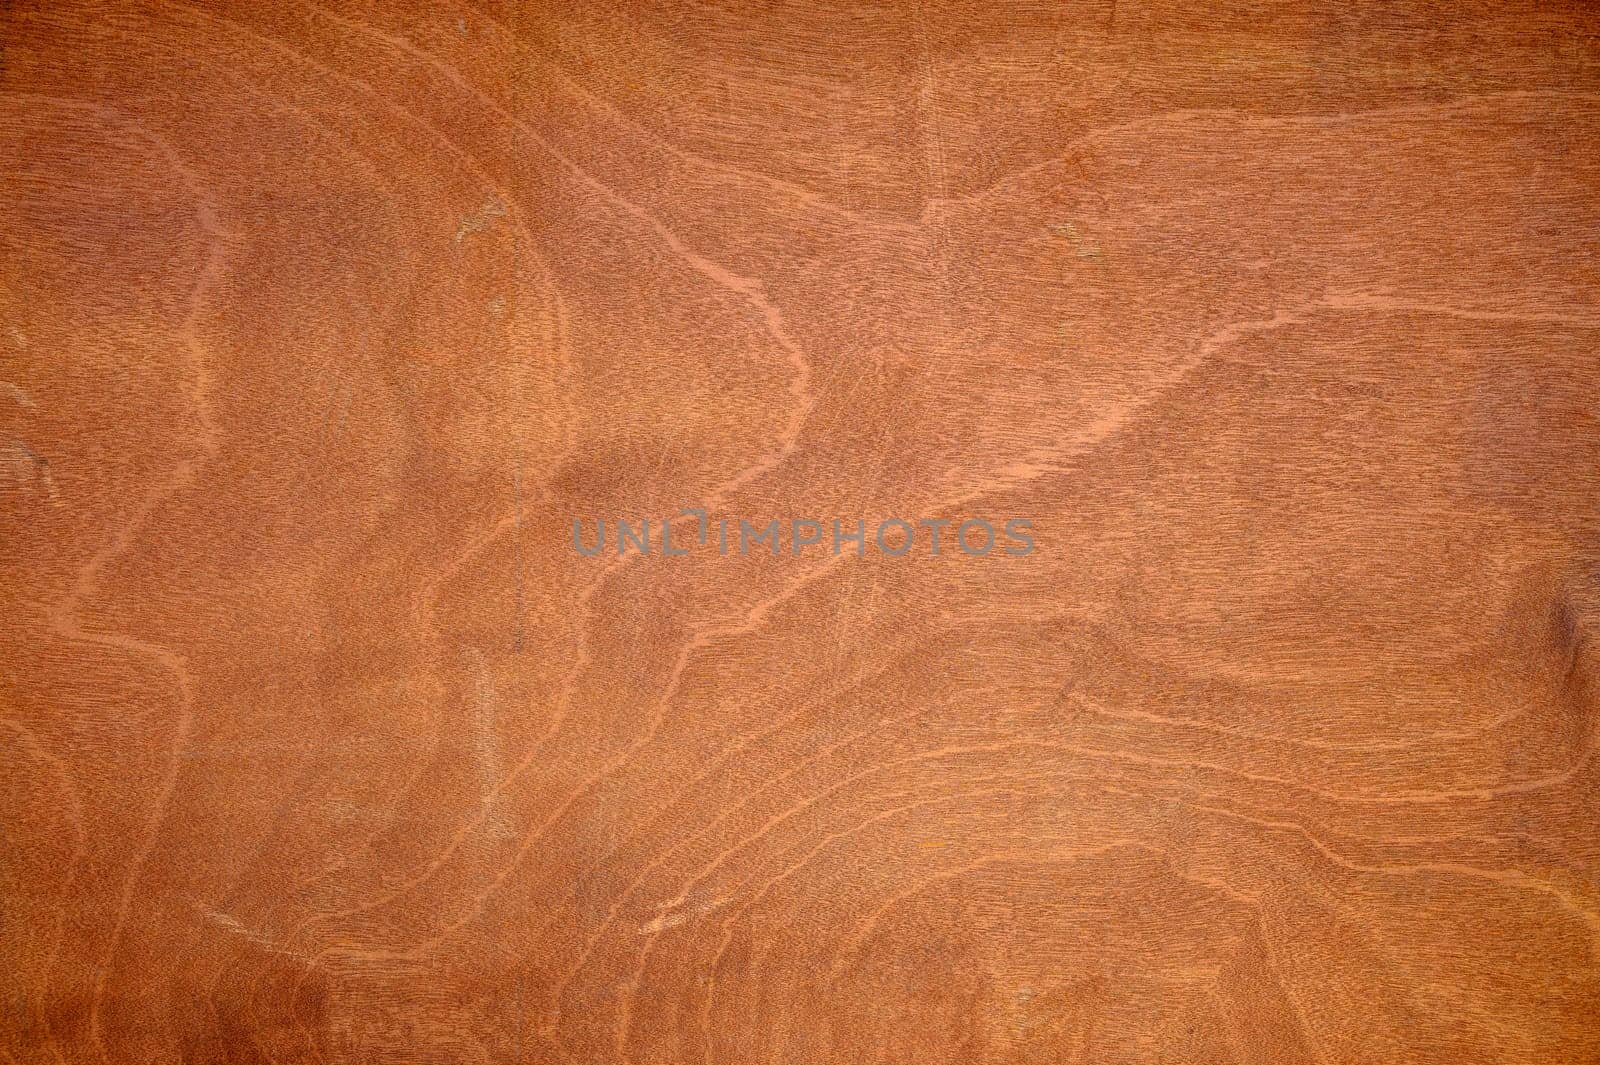 dark brown wooden surface as background